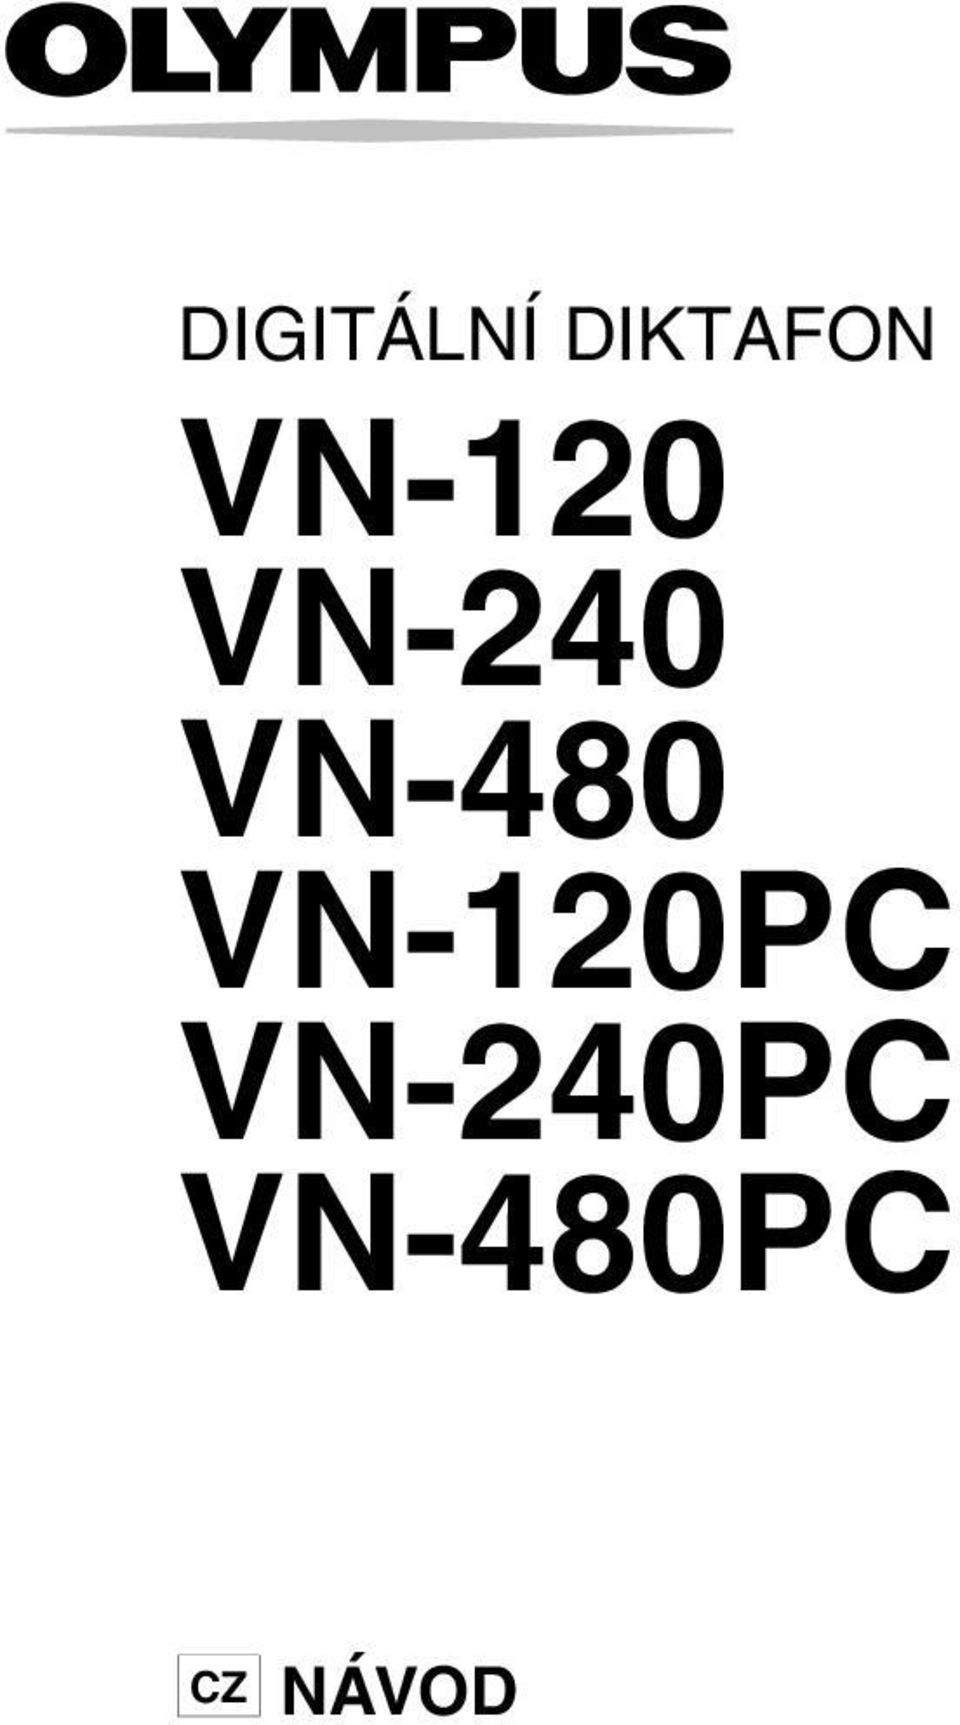 VN-480 VN-120PC